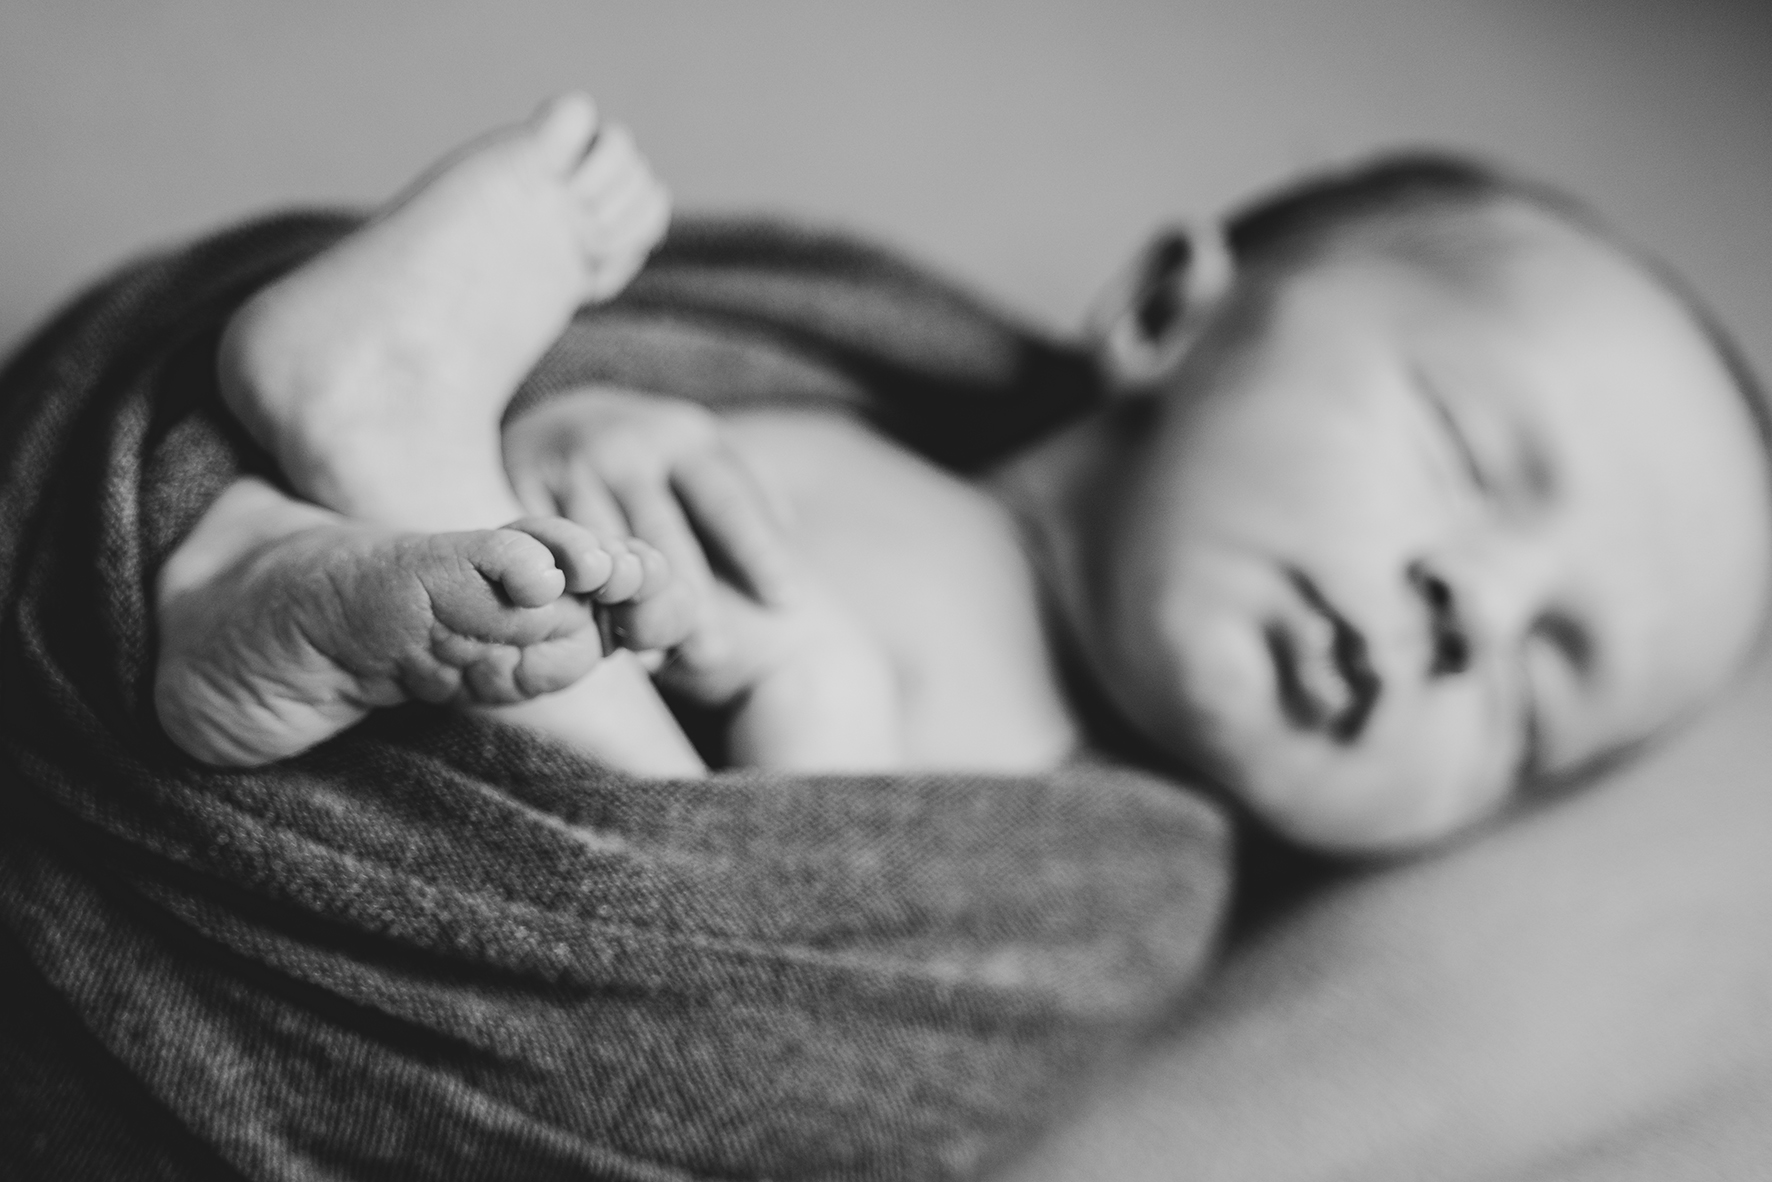 Detailbild der Babyfüße beim Babyshooting Neugeborenes Newbornfotos in schwarz weiß